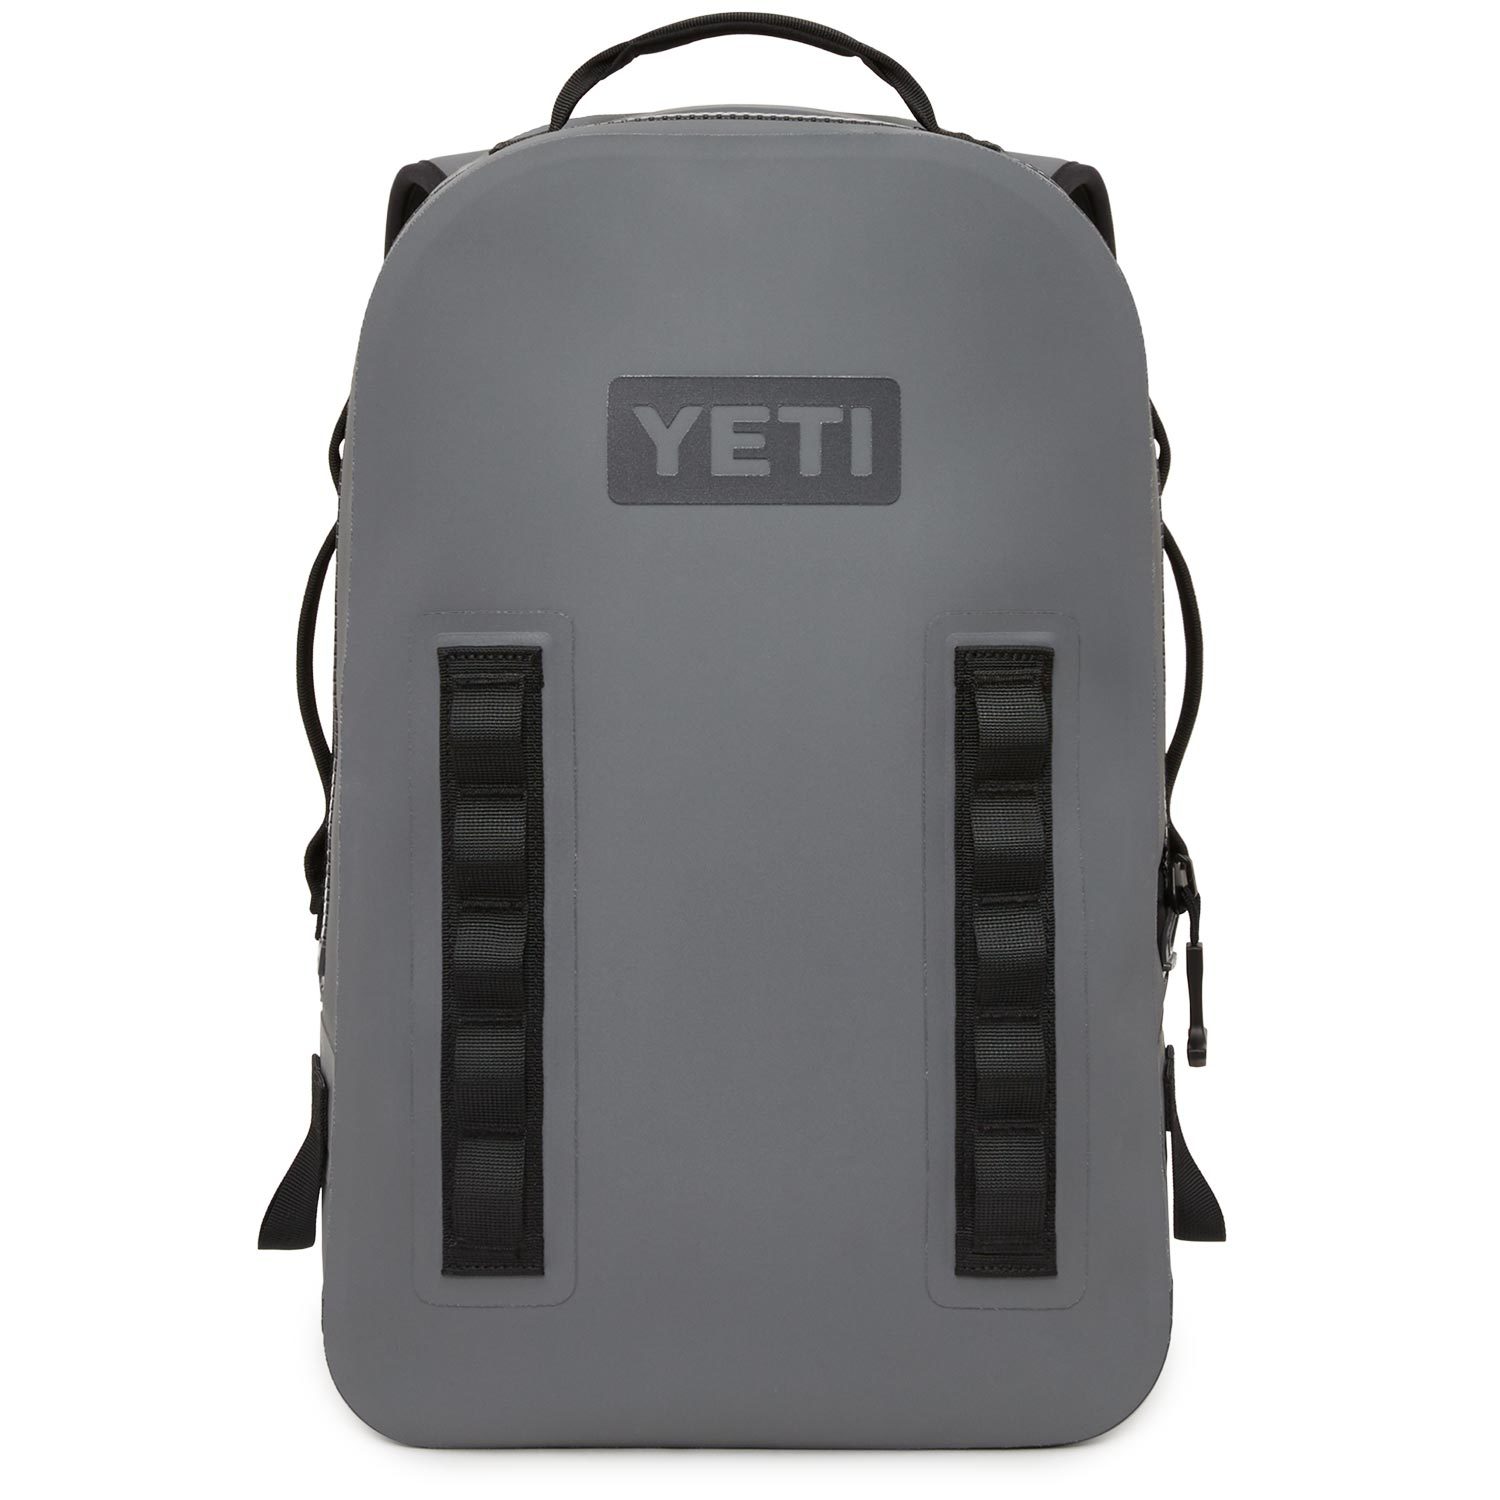 We Test - Yeti Panga Dry Backpack - 7601 Southwest Pkwy, Austin, TX 78735,  USA